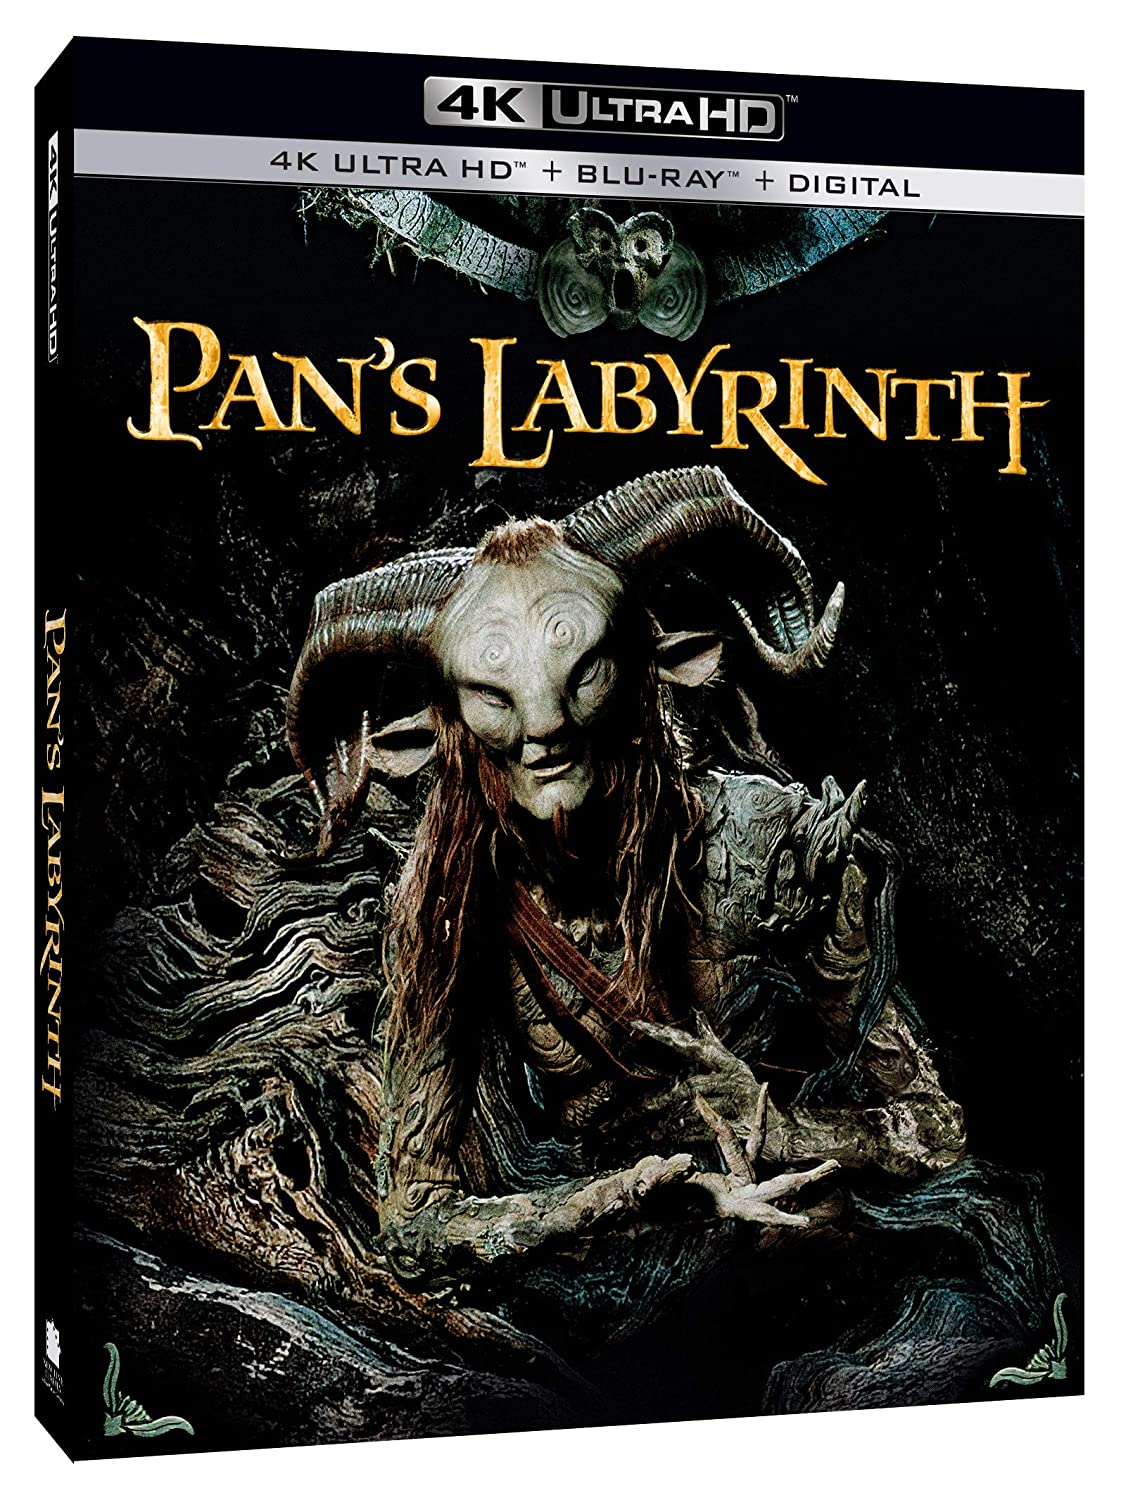 Pan's Labyrinth (4k Ultra HD + Blu-ray + Digital)